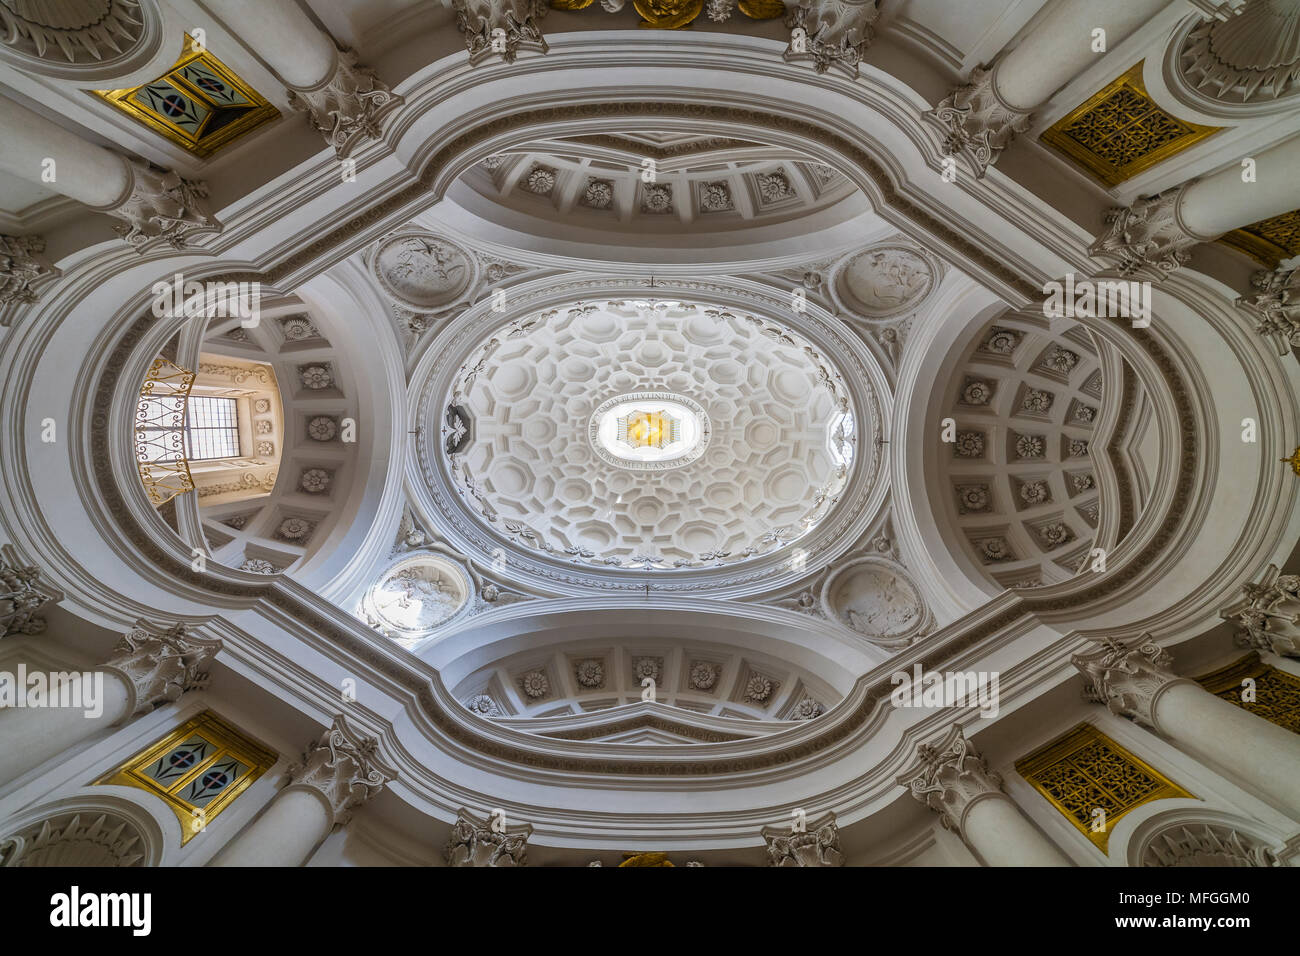 The dome of San Carlo alle Quattro Fontane by Francesco Borromini Stock Photo